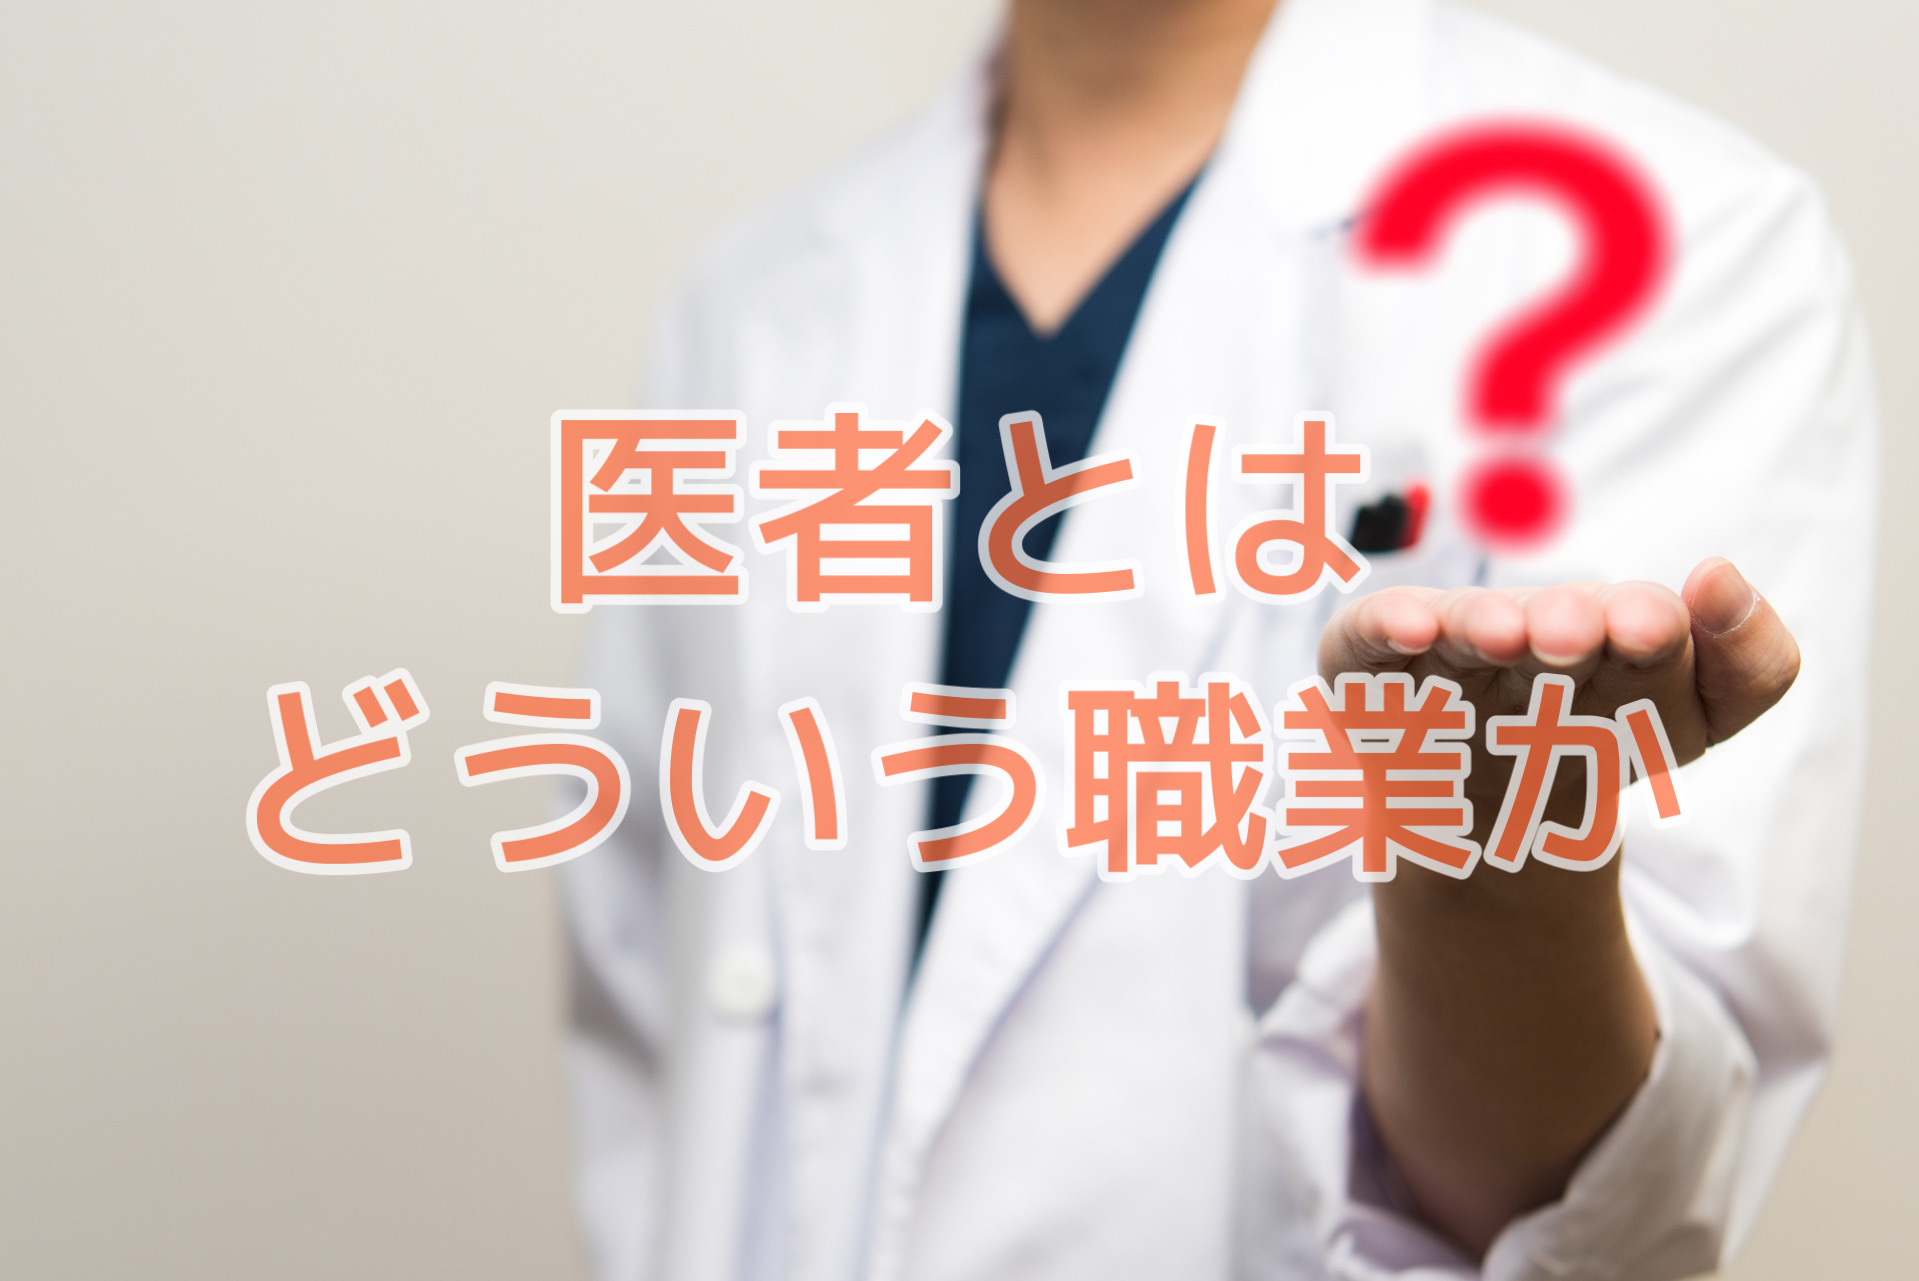 本質 本当に医者になりたいの Matsuki Blog